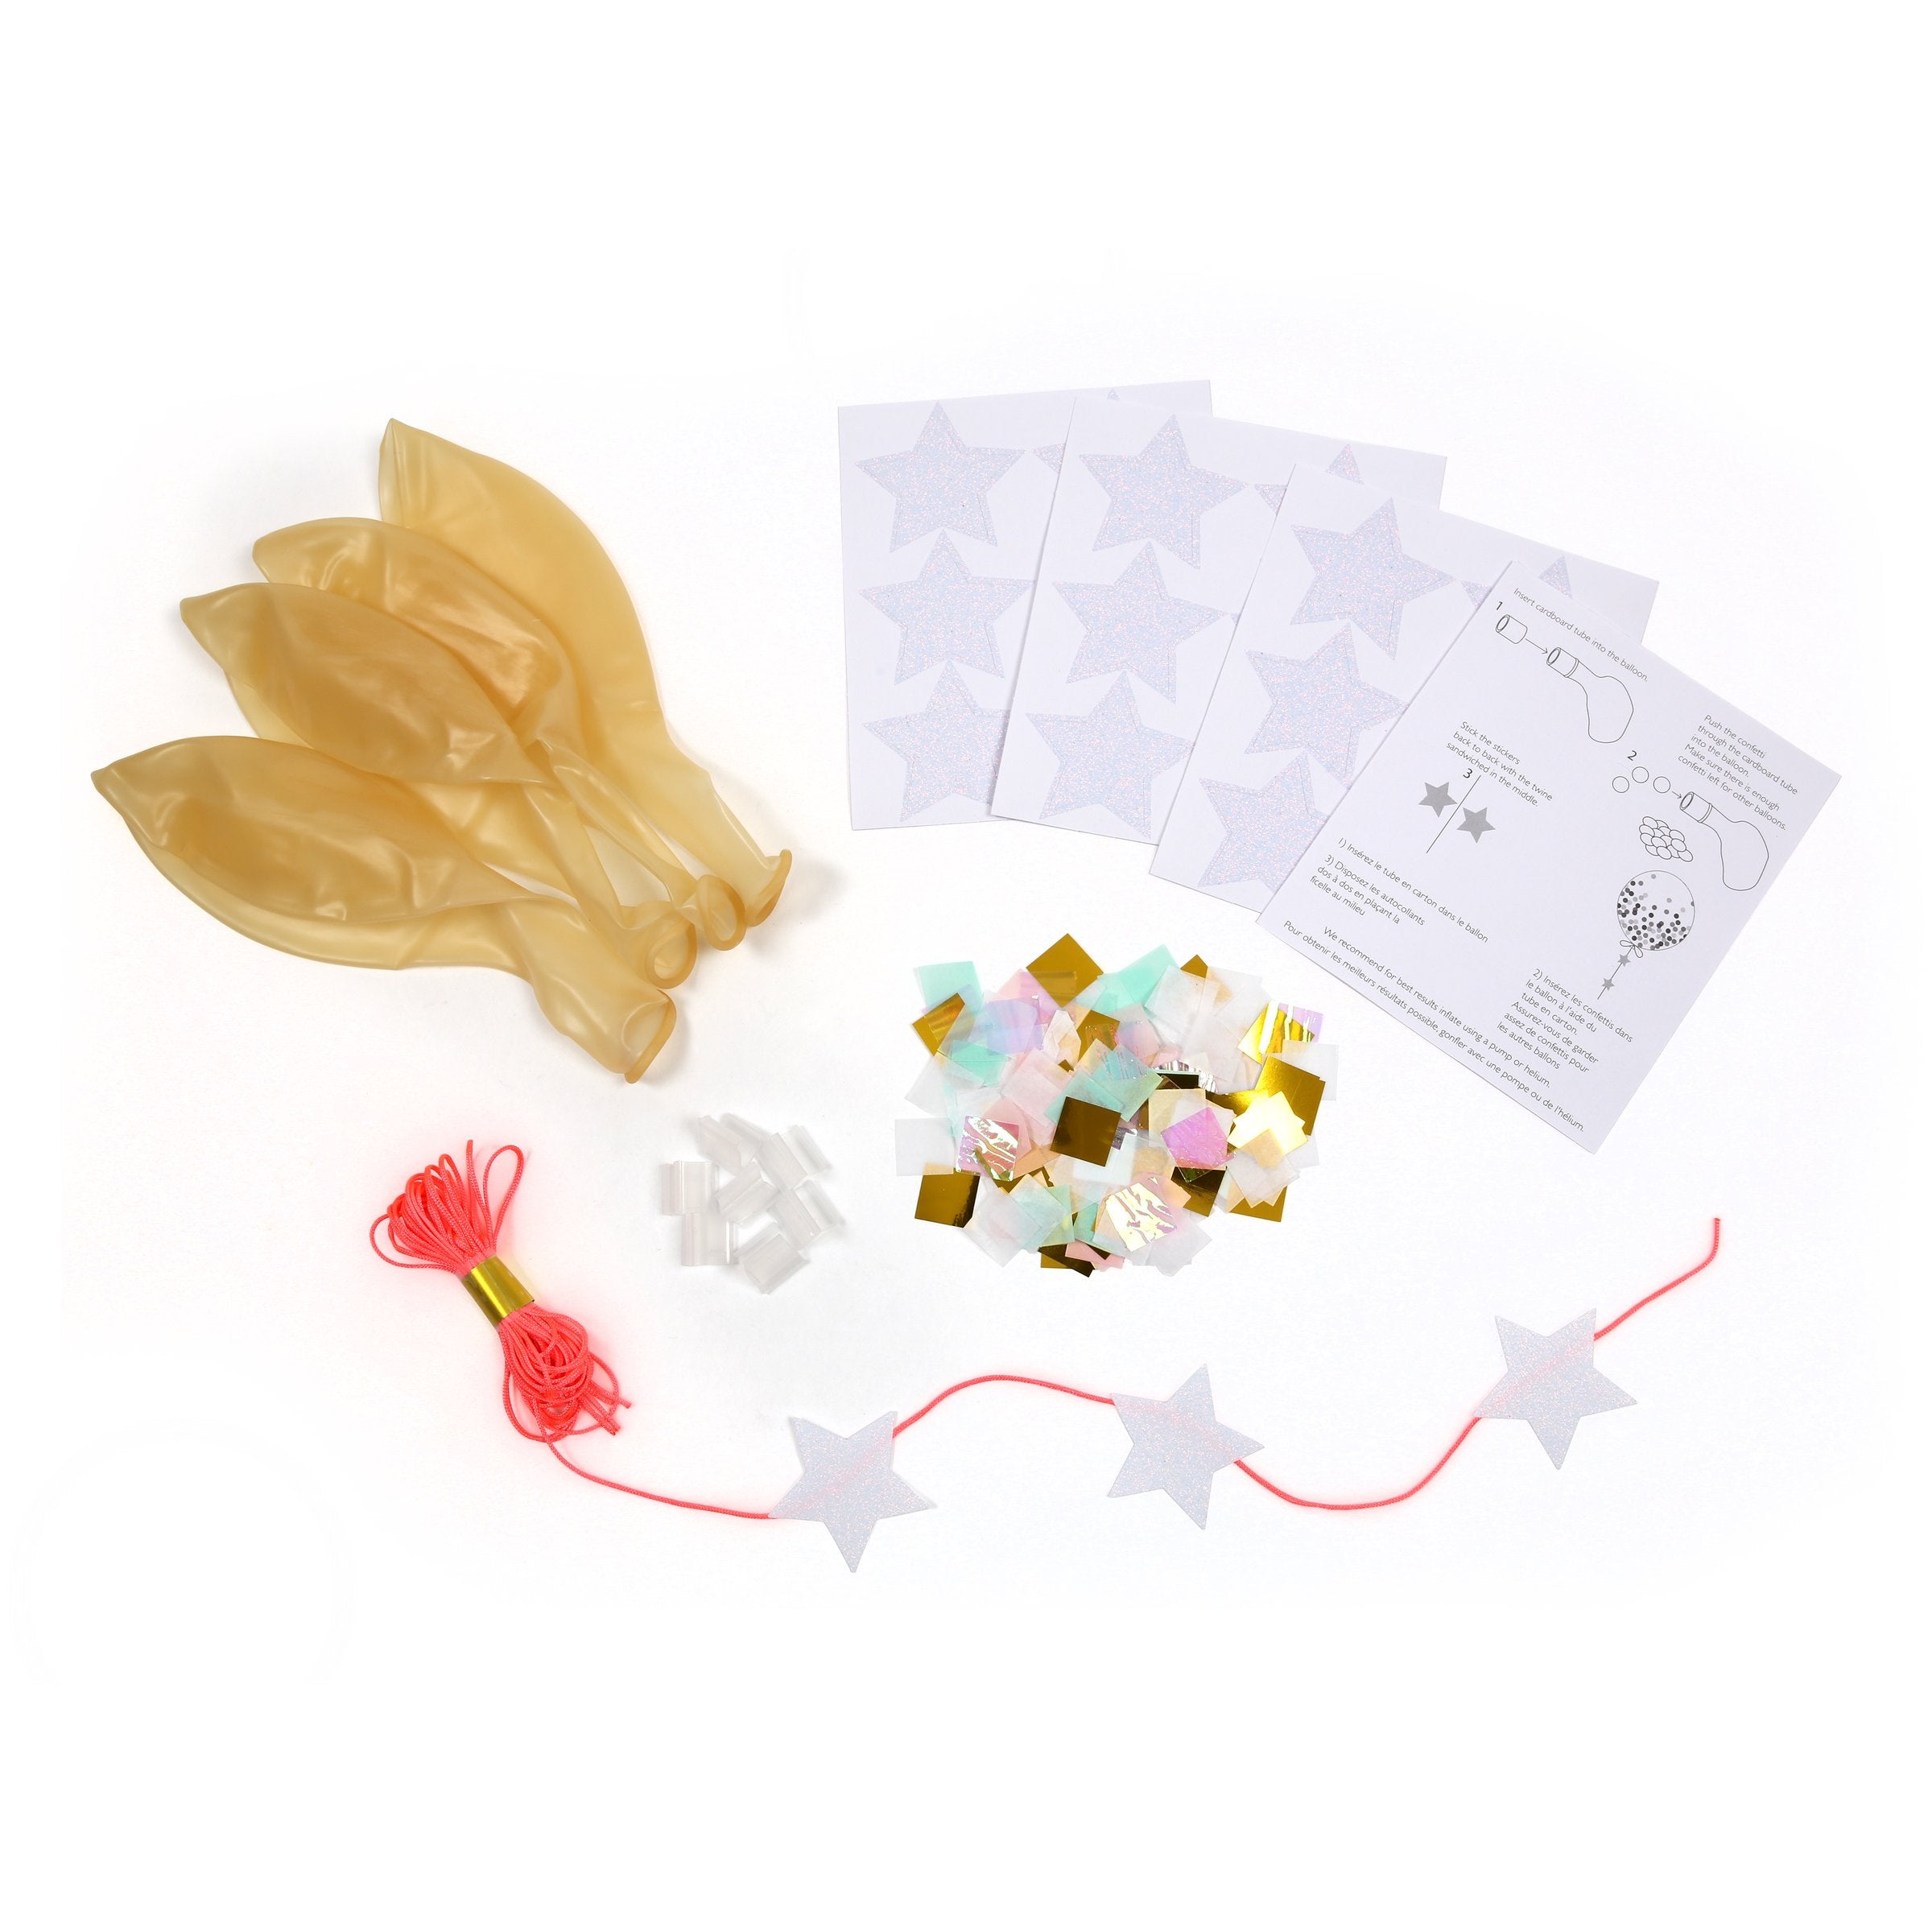 Iridescent Confetti Balloon Kit